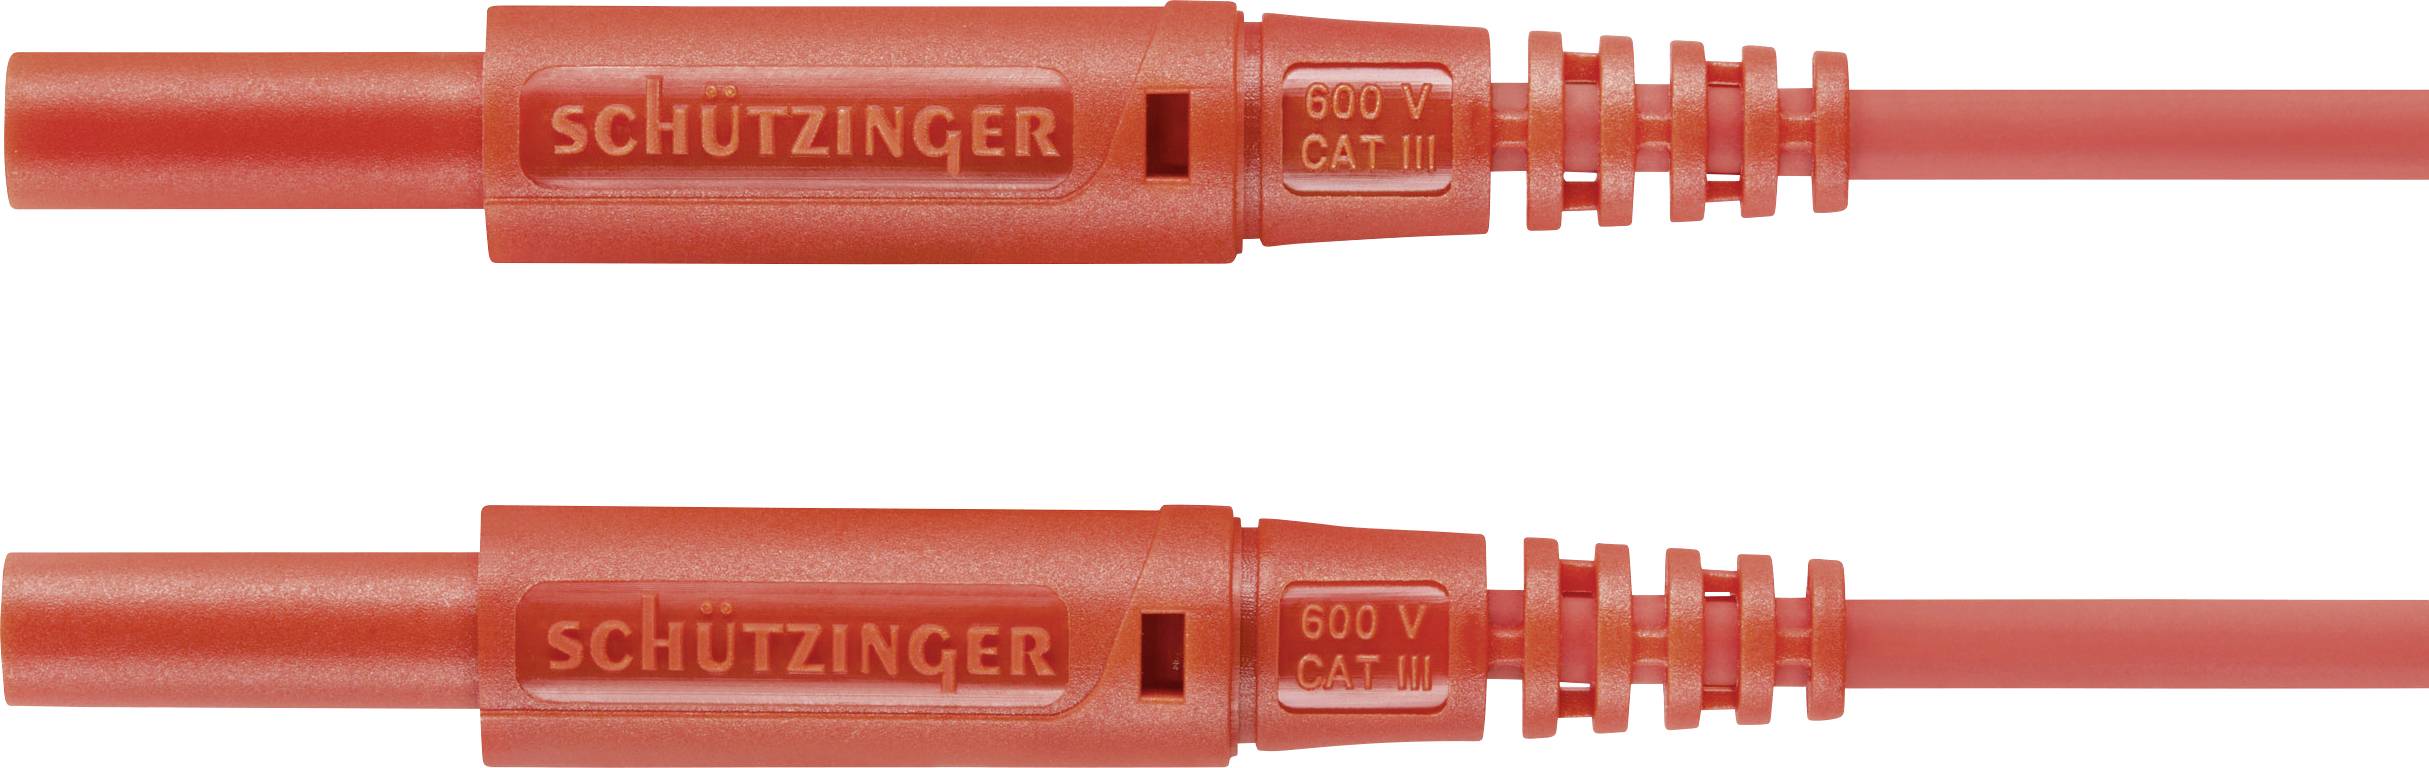 SCHÜTZINGER MSFK A301 / 0.5 / 100 / RT Messleitung [Stecker 2 mm - Stecker 2 mm] 100.00 cm Rot